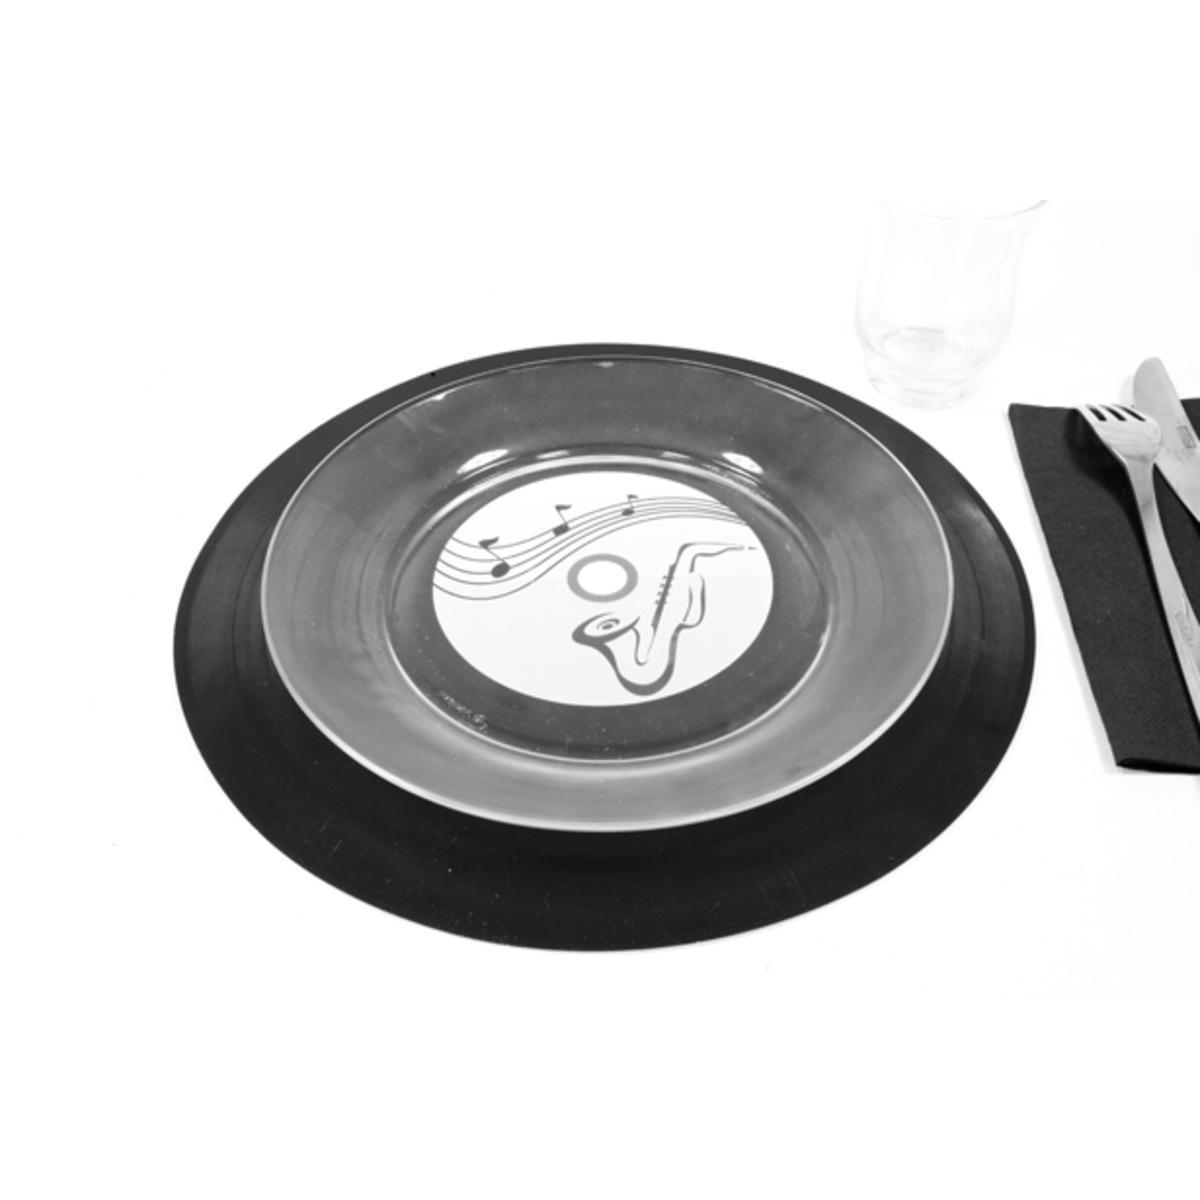 Lot de 2 sets de table vinyl musique - Plastique - Diamètre 30 cm - Noir